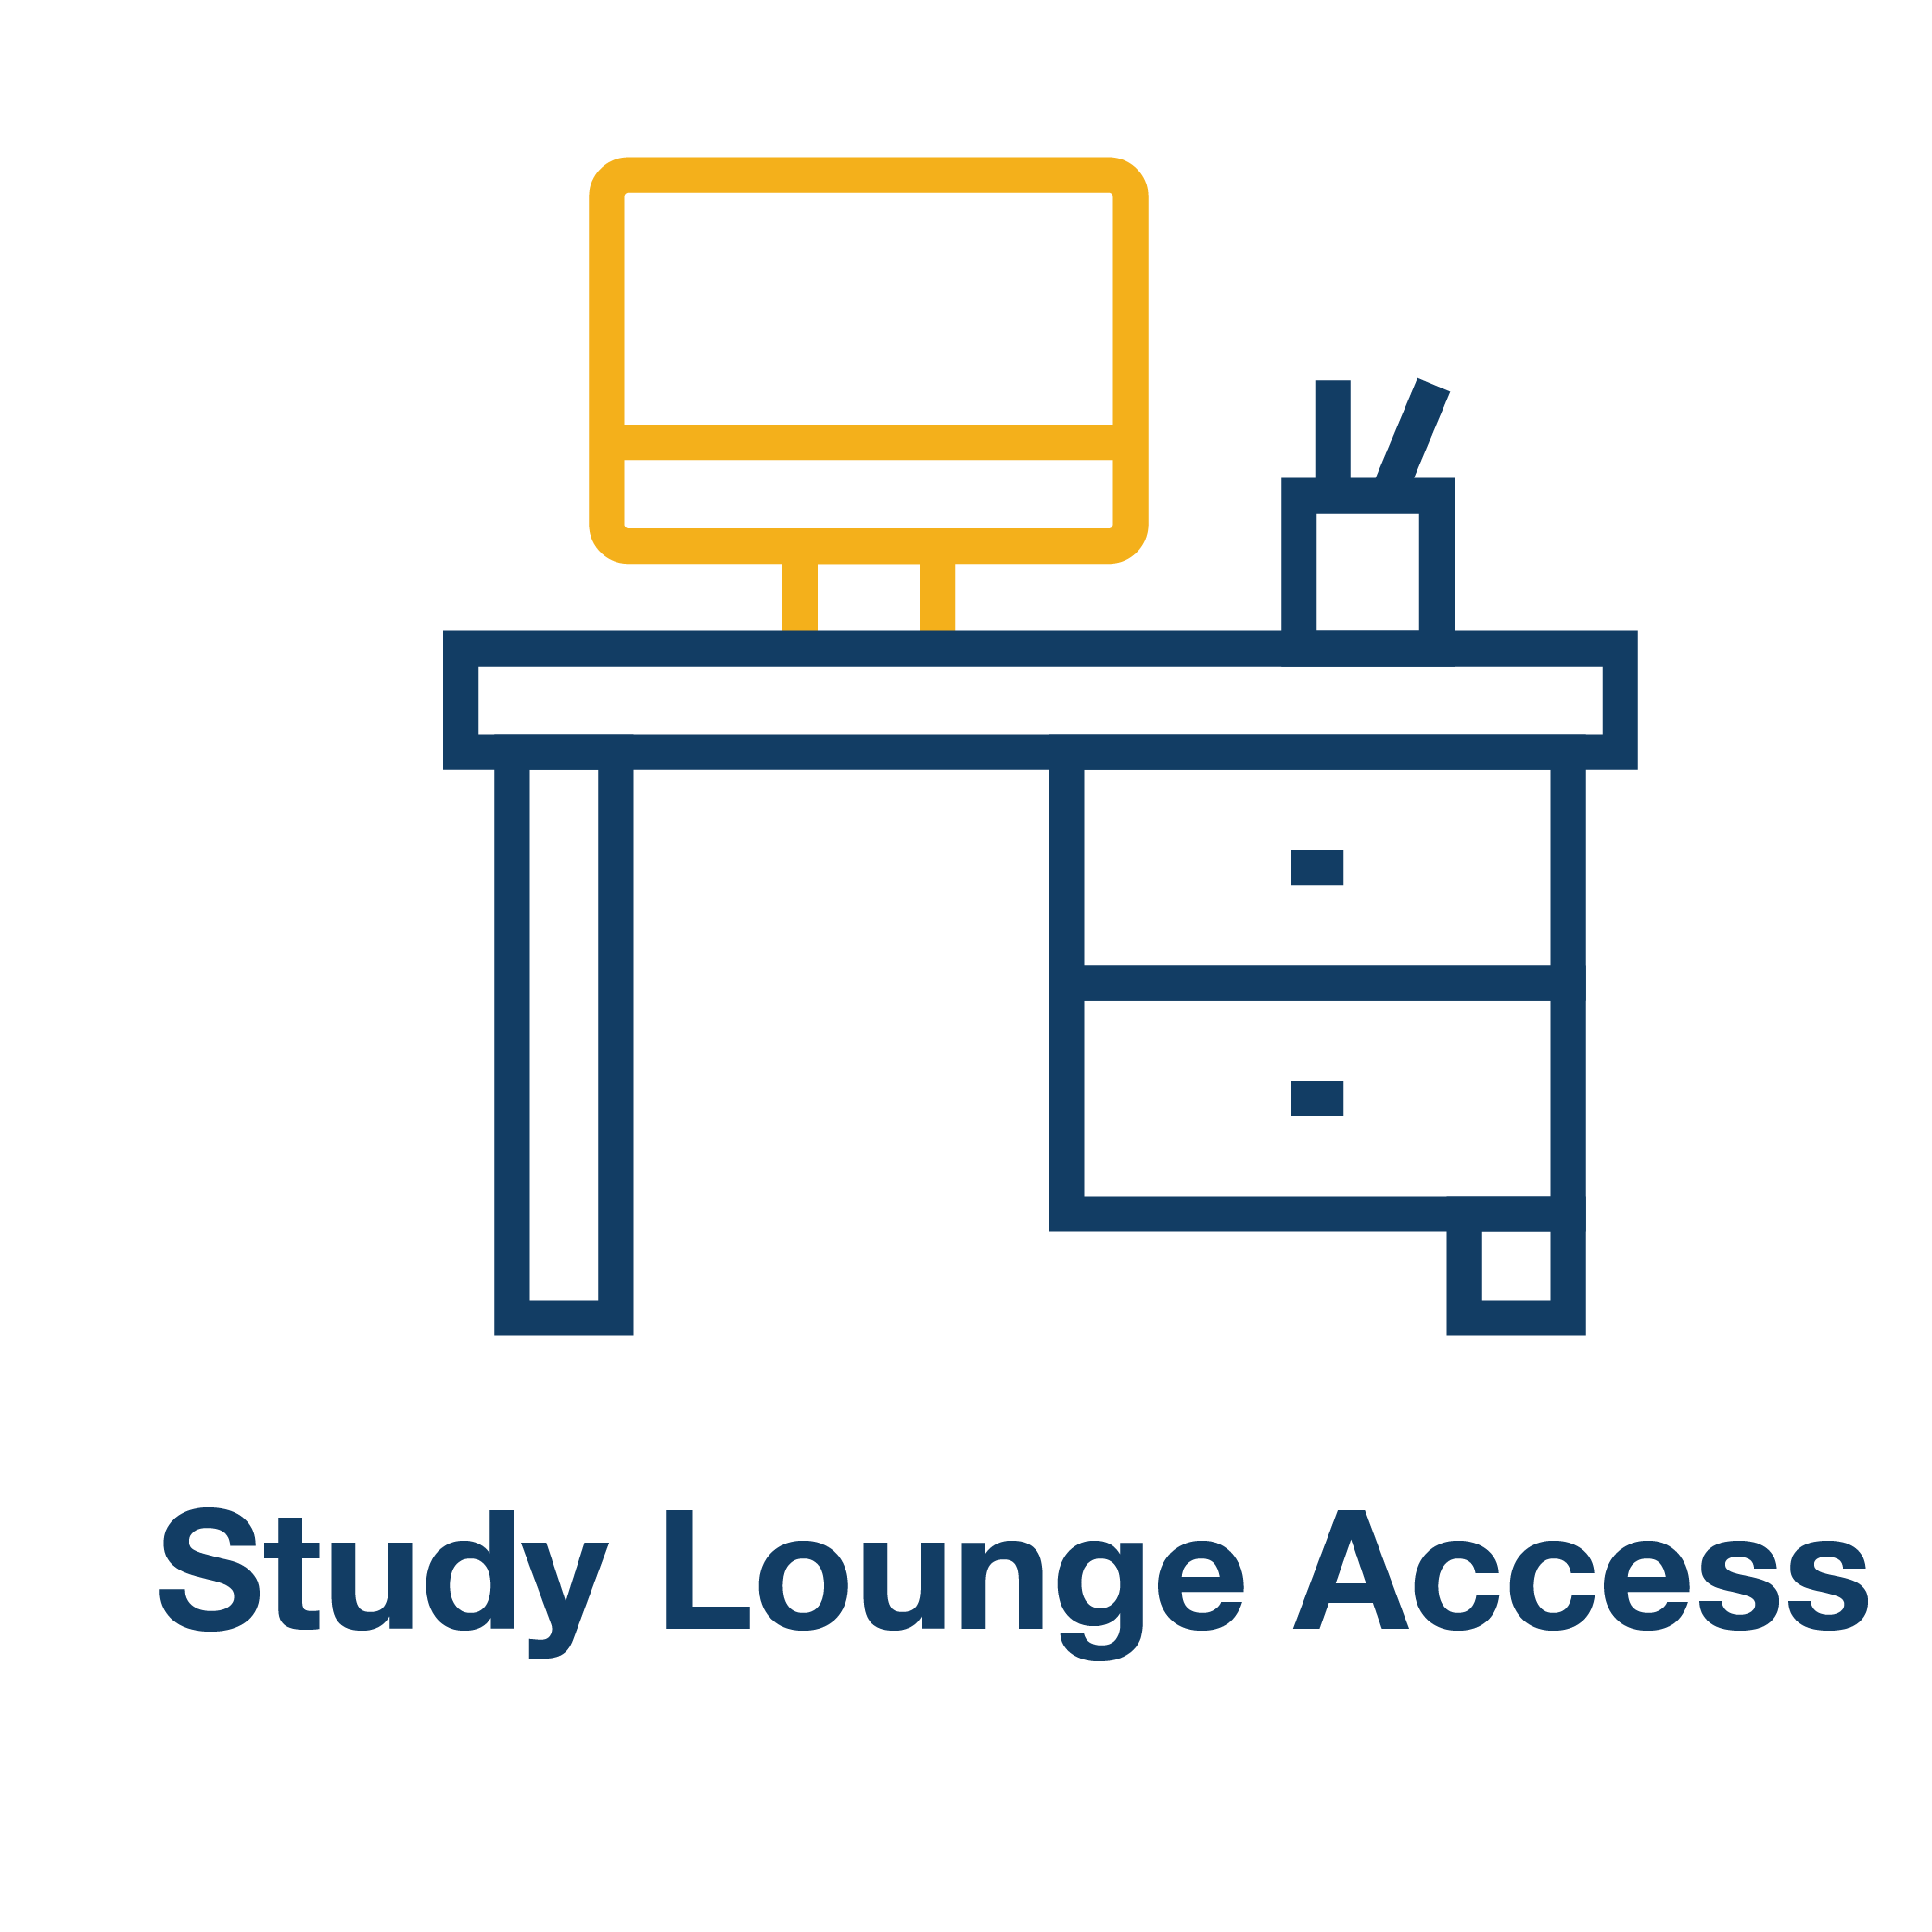 Study Lounge Access